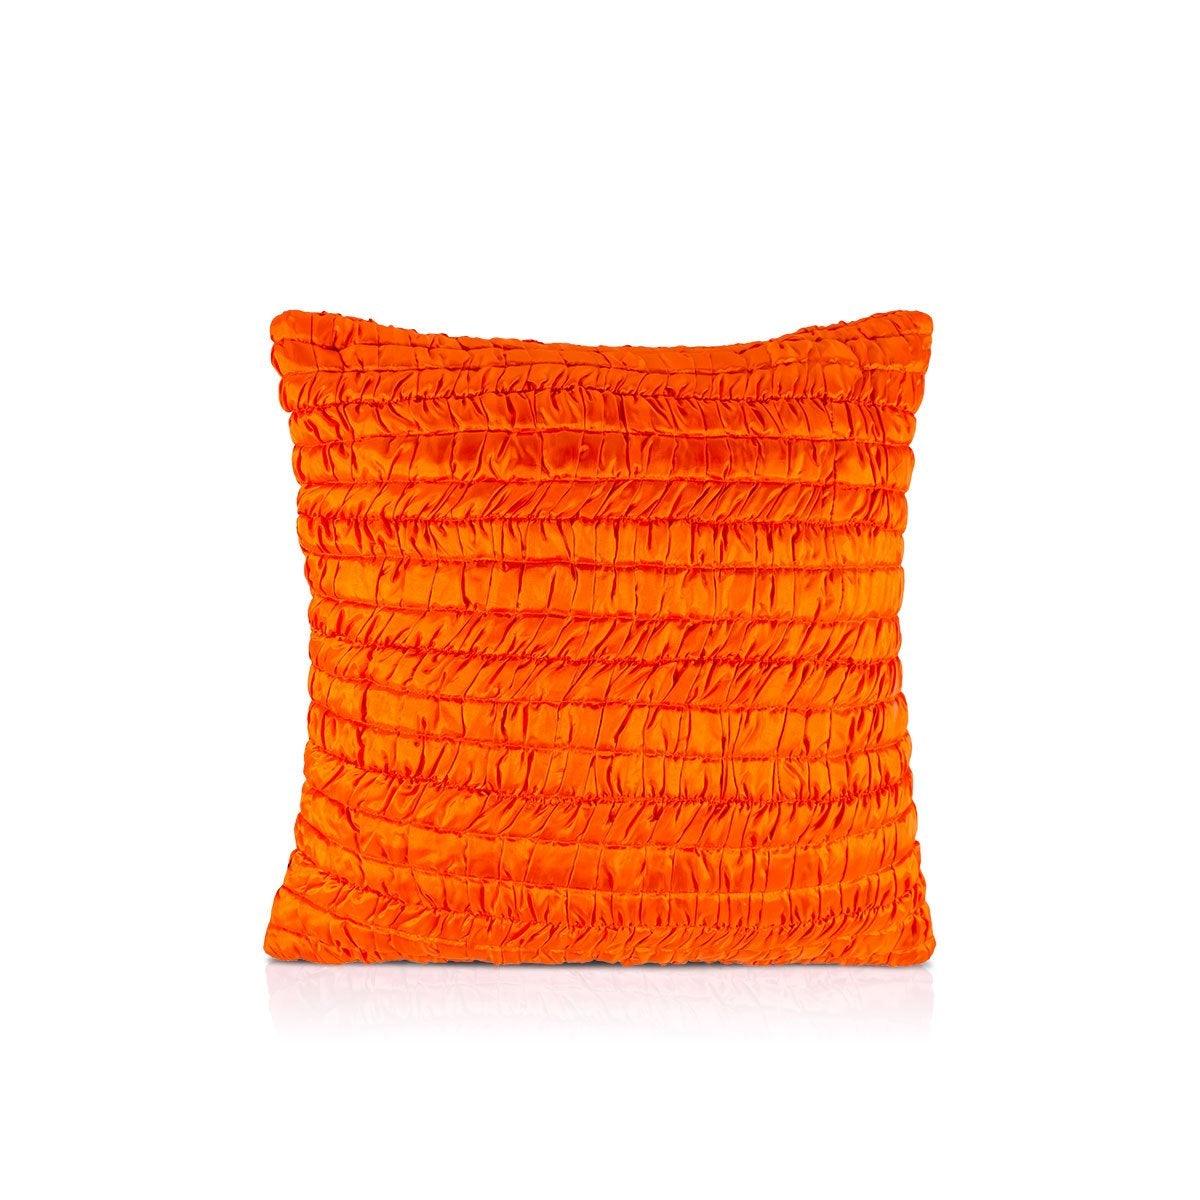 Aza 20 In X 20 In Orange Cushion Covers - Home4u